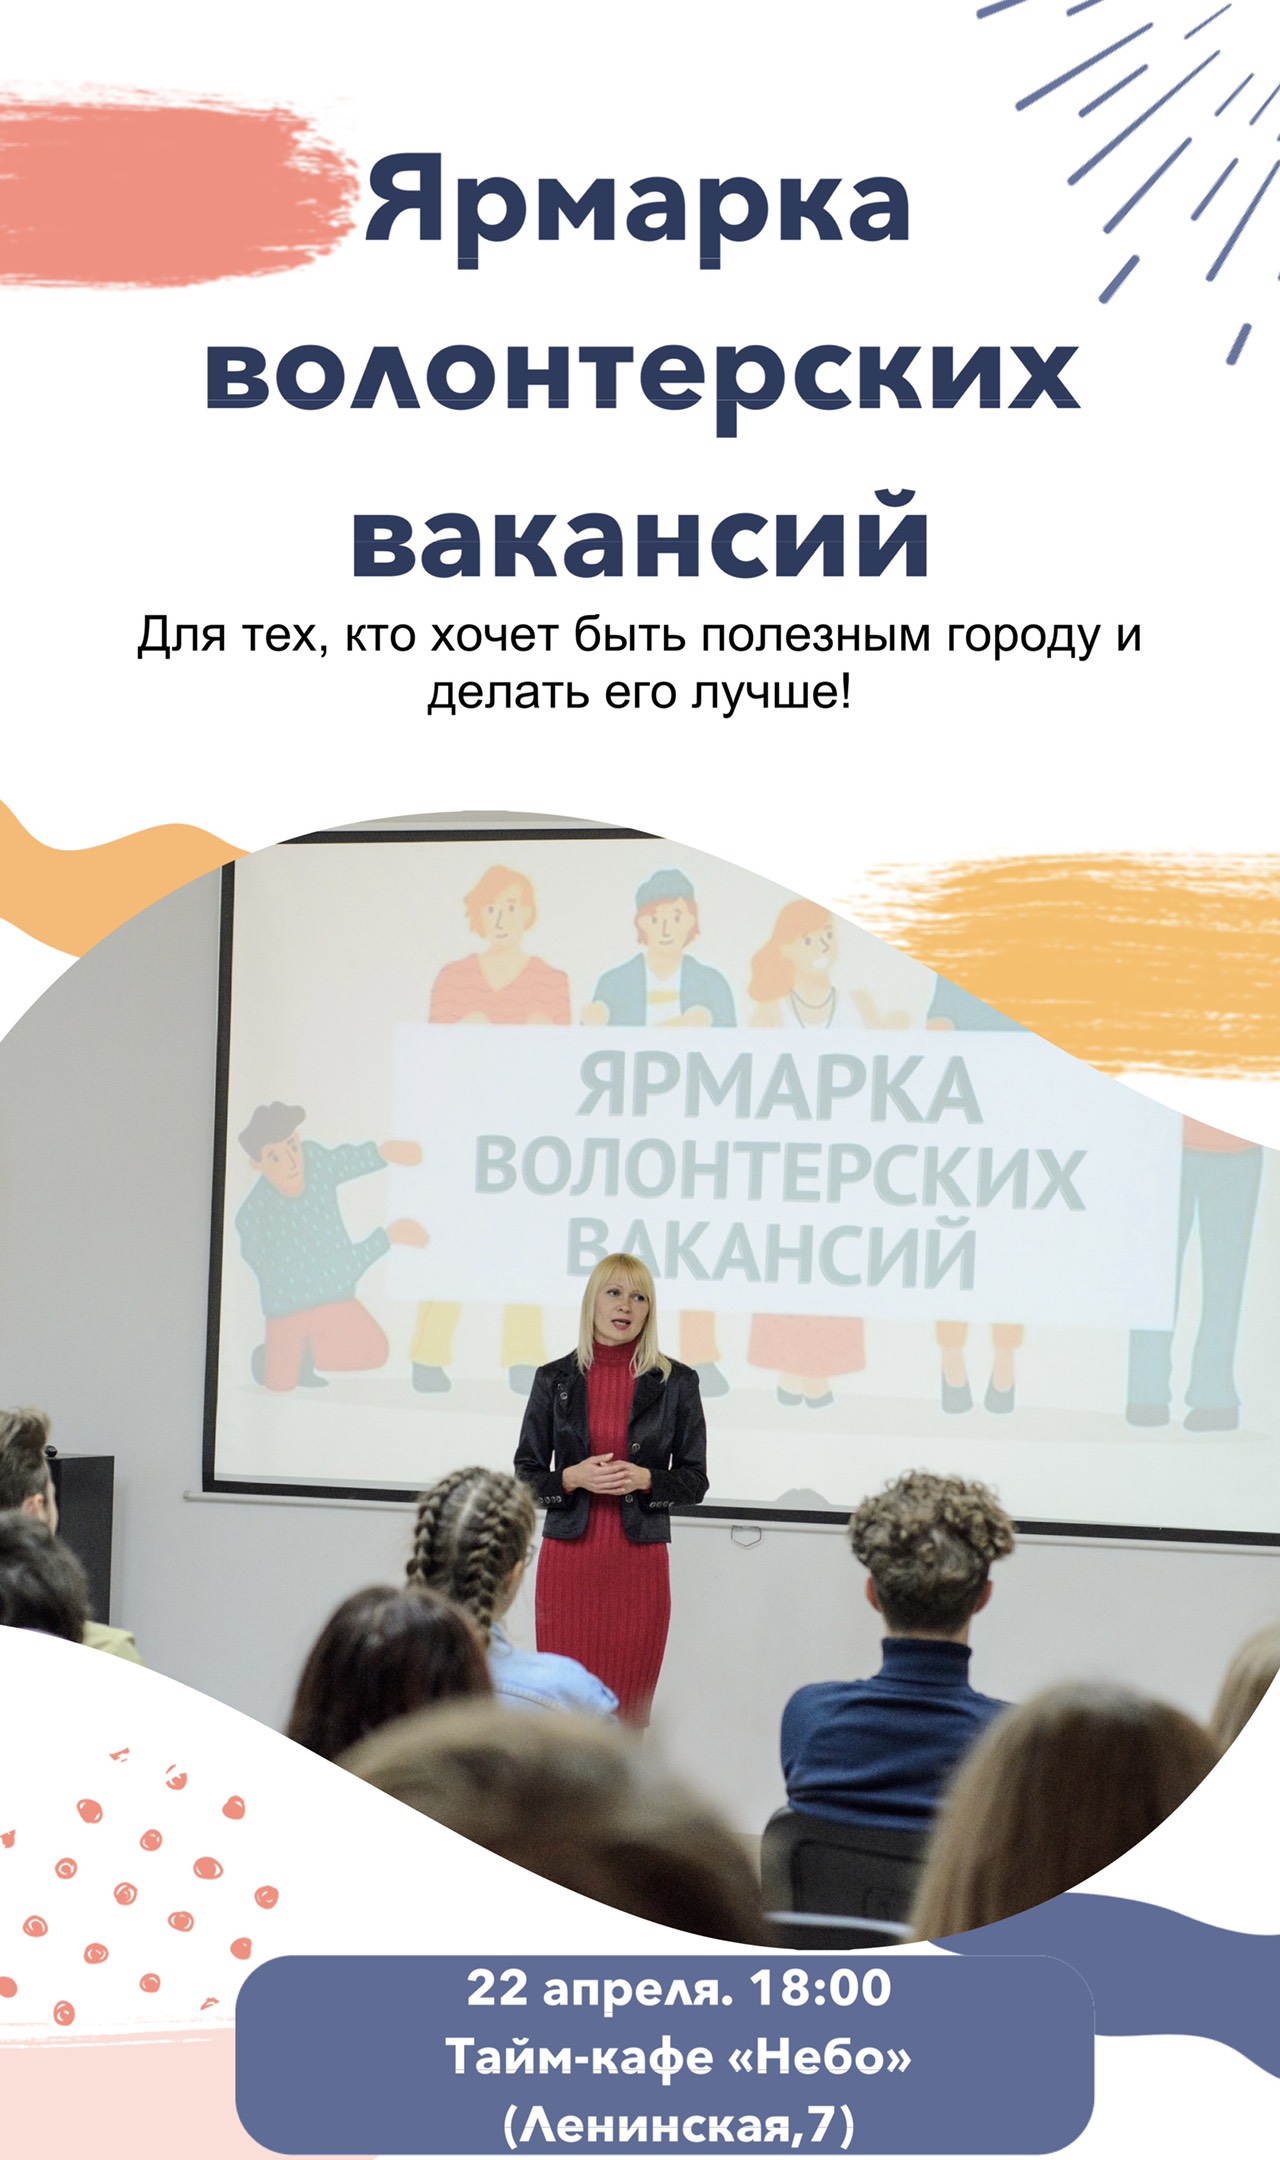 22 апреля в Могилеве состоится ярмарка волонтерских вакансий